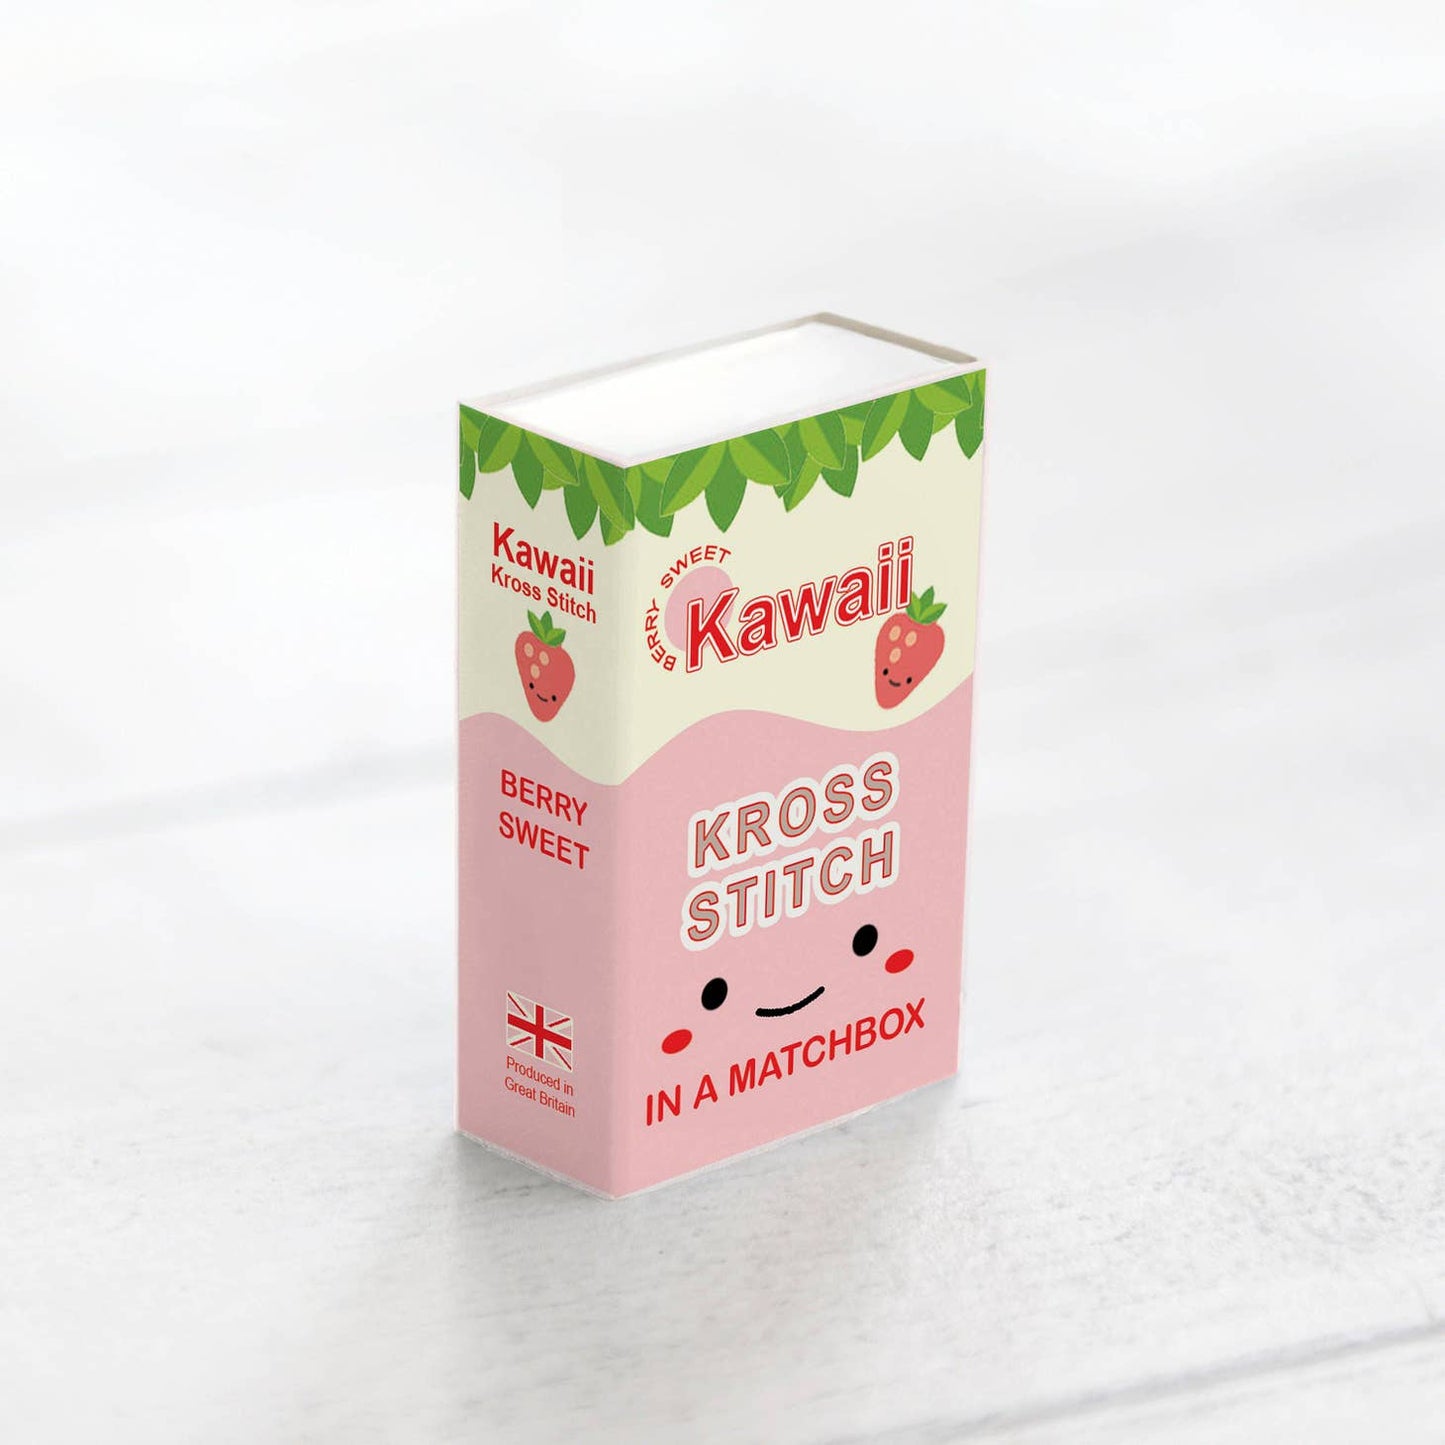 Kawaii Strawberry Mini Cross Stitch Kit In A Matchbox